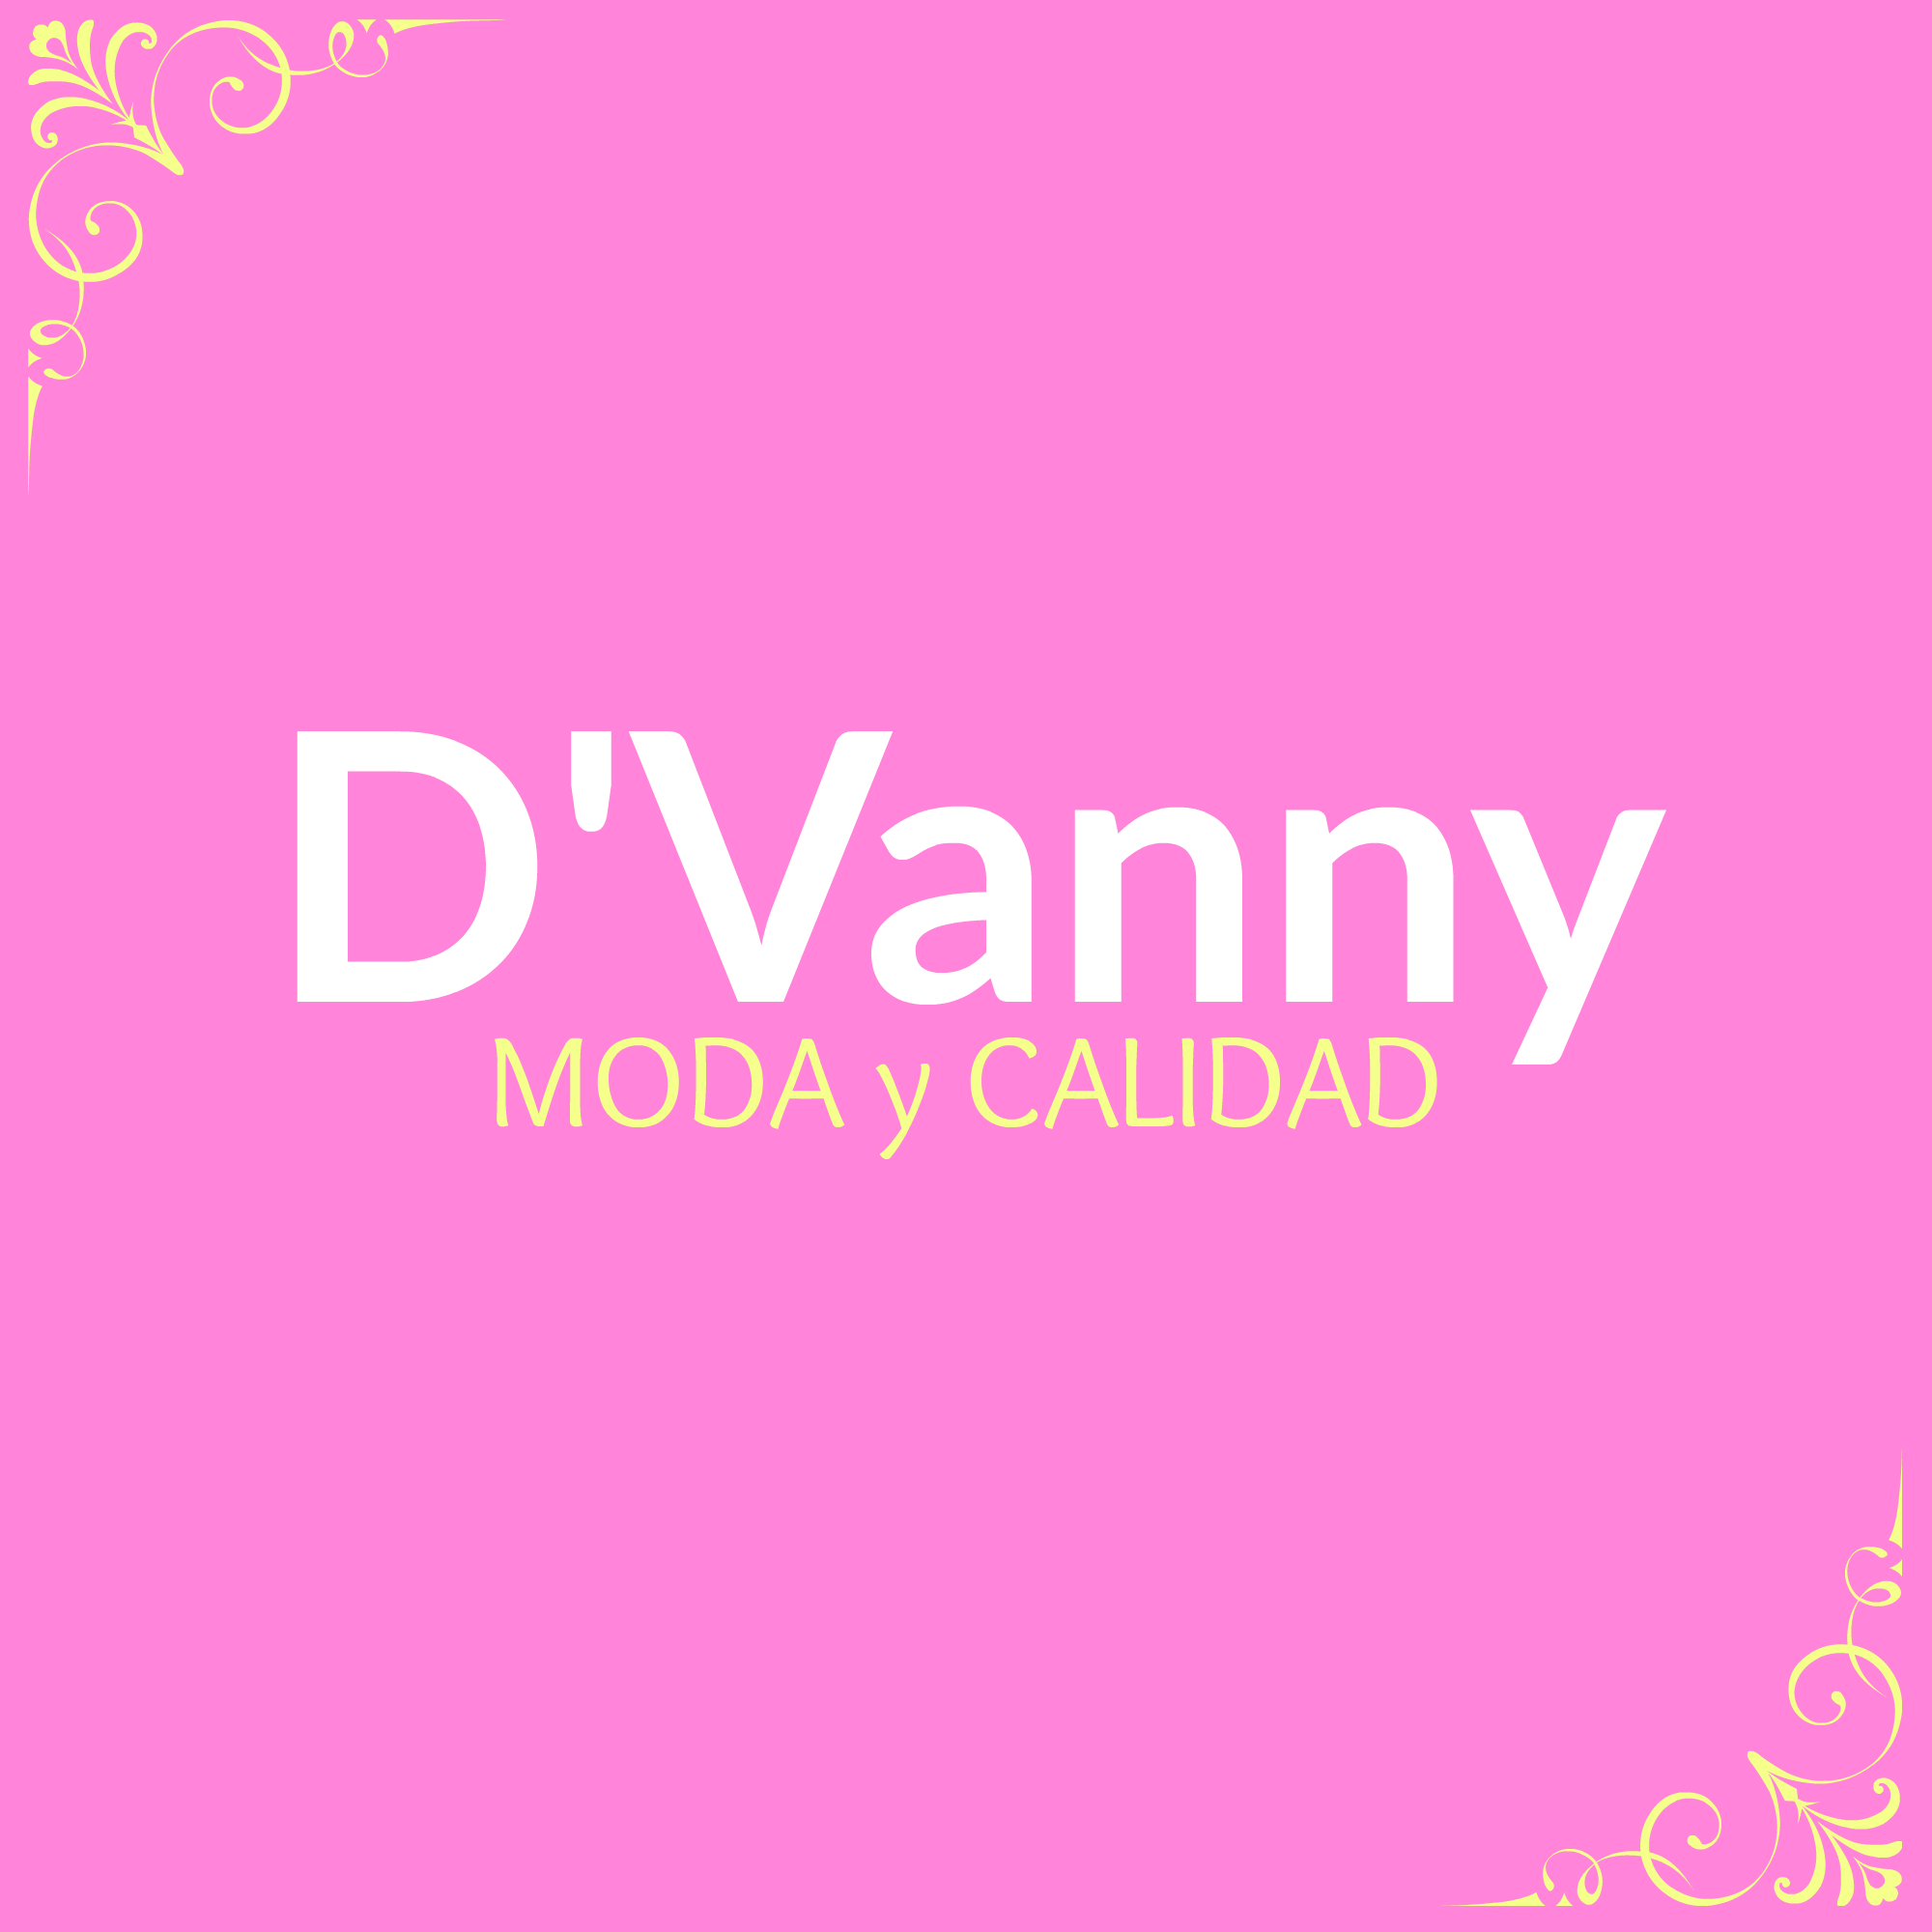 D’Vanny